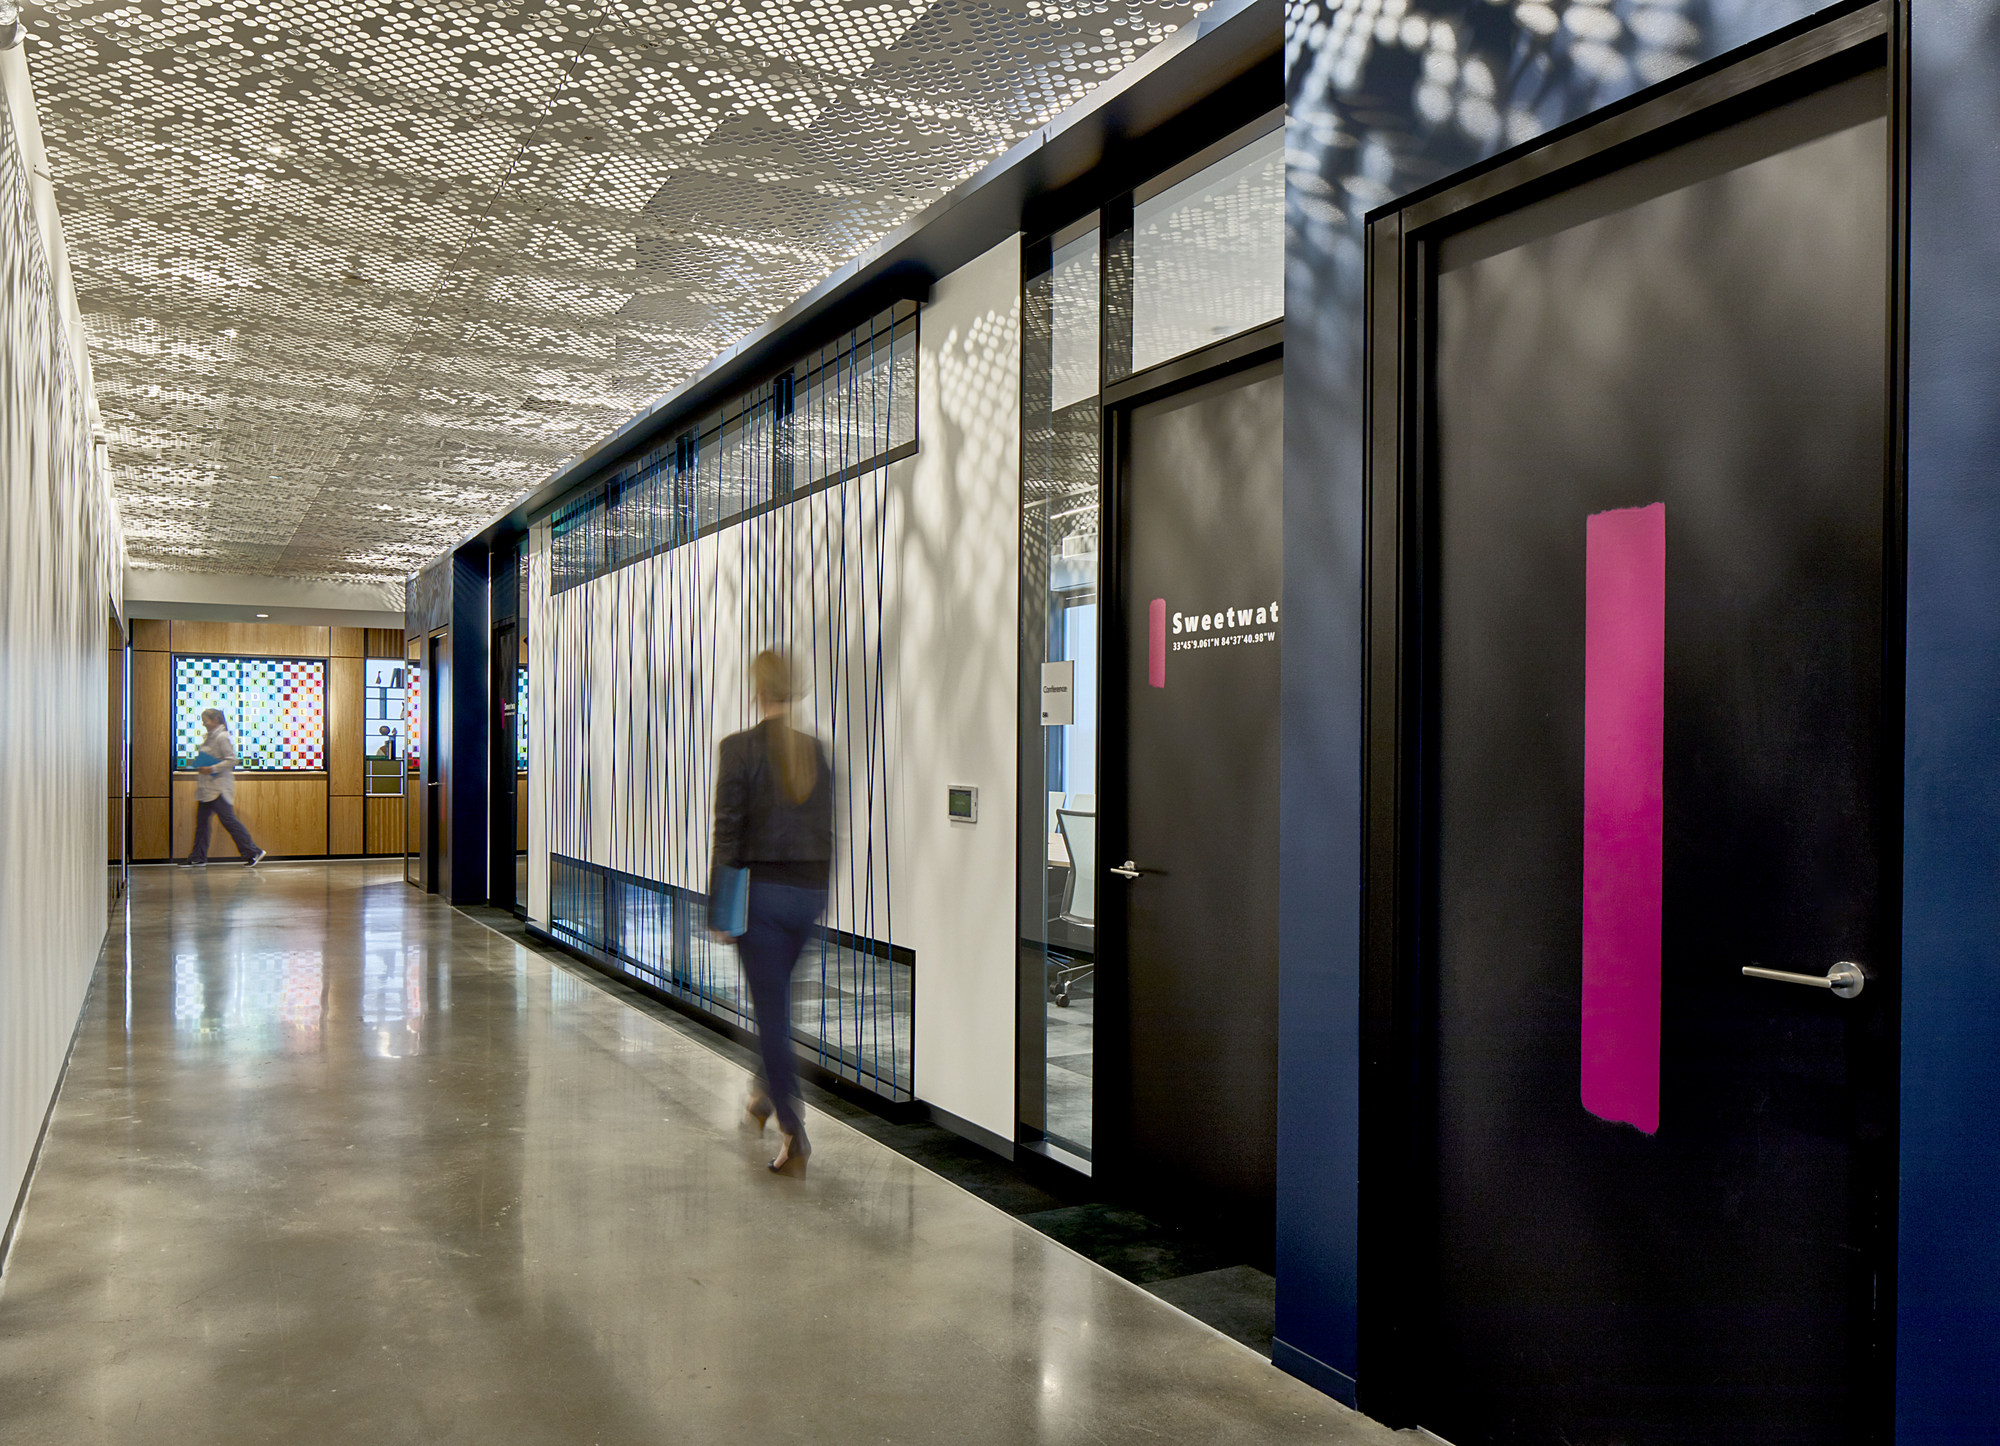 Microsoft(マイクロソフト)のオフィス - アルファレッタ, ジョージア州の廊下